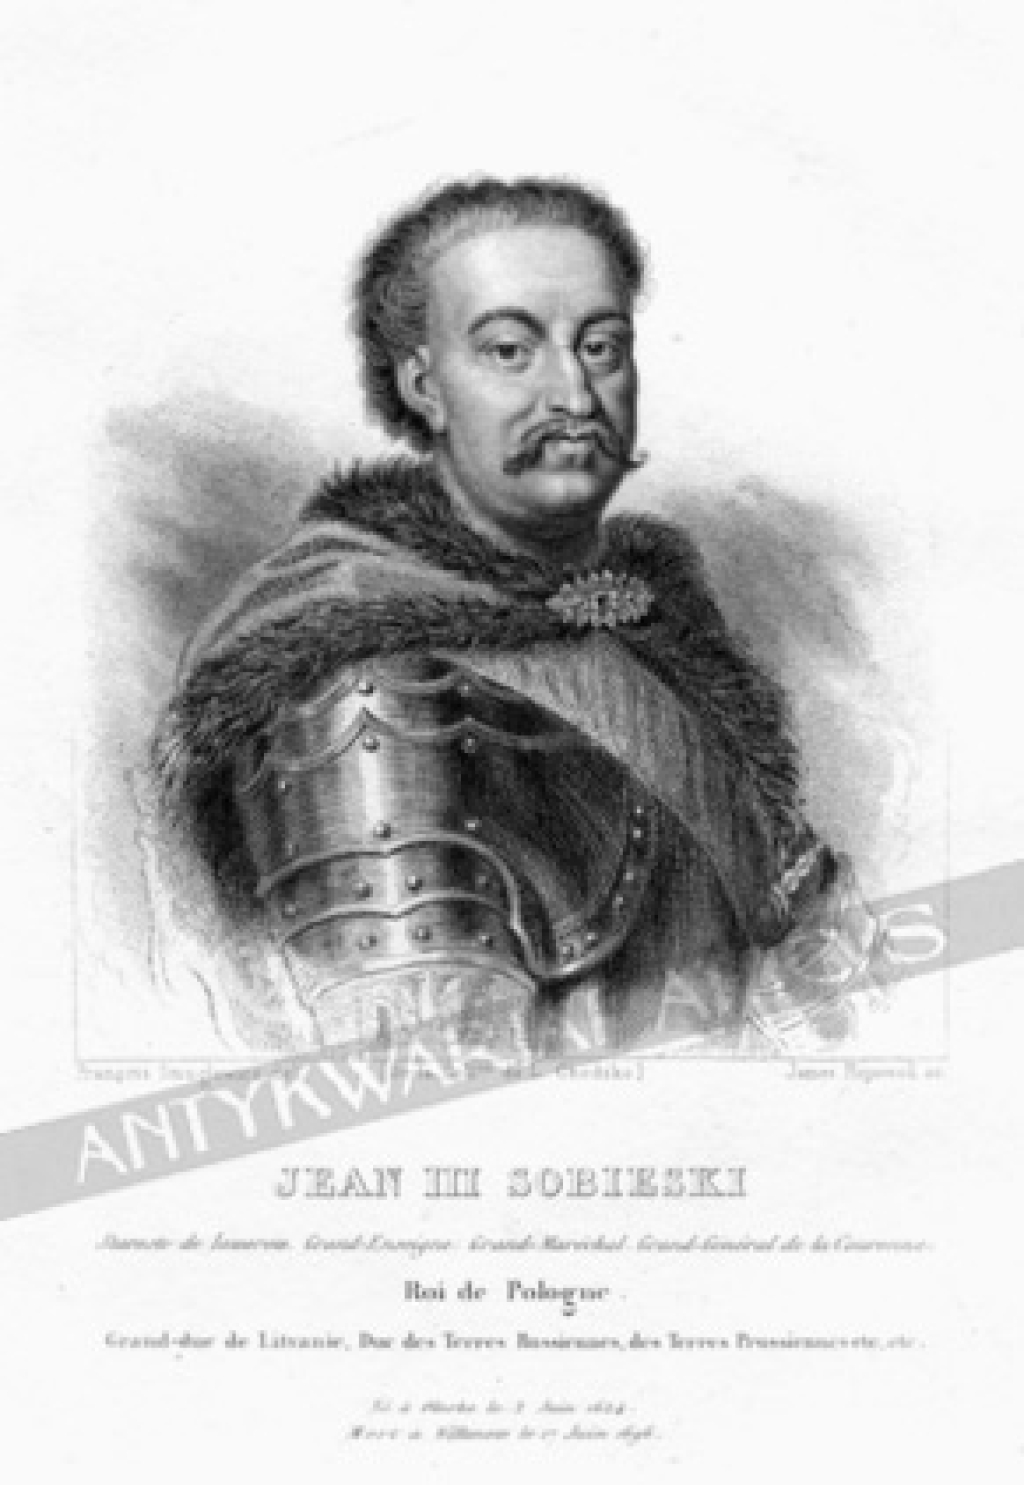 [rycina, ok. 1840] Jean III SobieskiRoi de Pologne. Grand-due de Lituanie, Due des Terres Russiennes, des Terres Prussiennes etc.